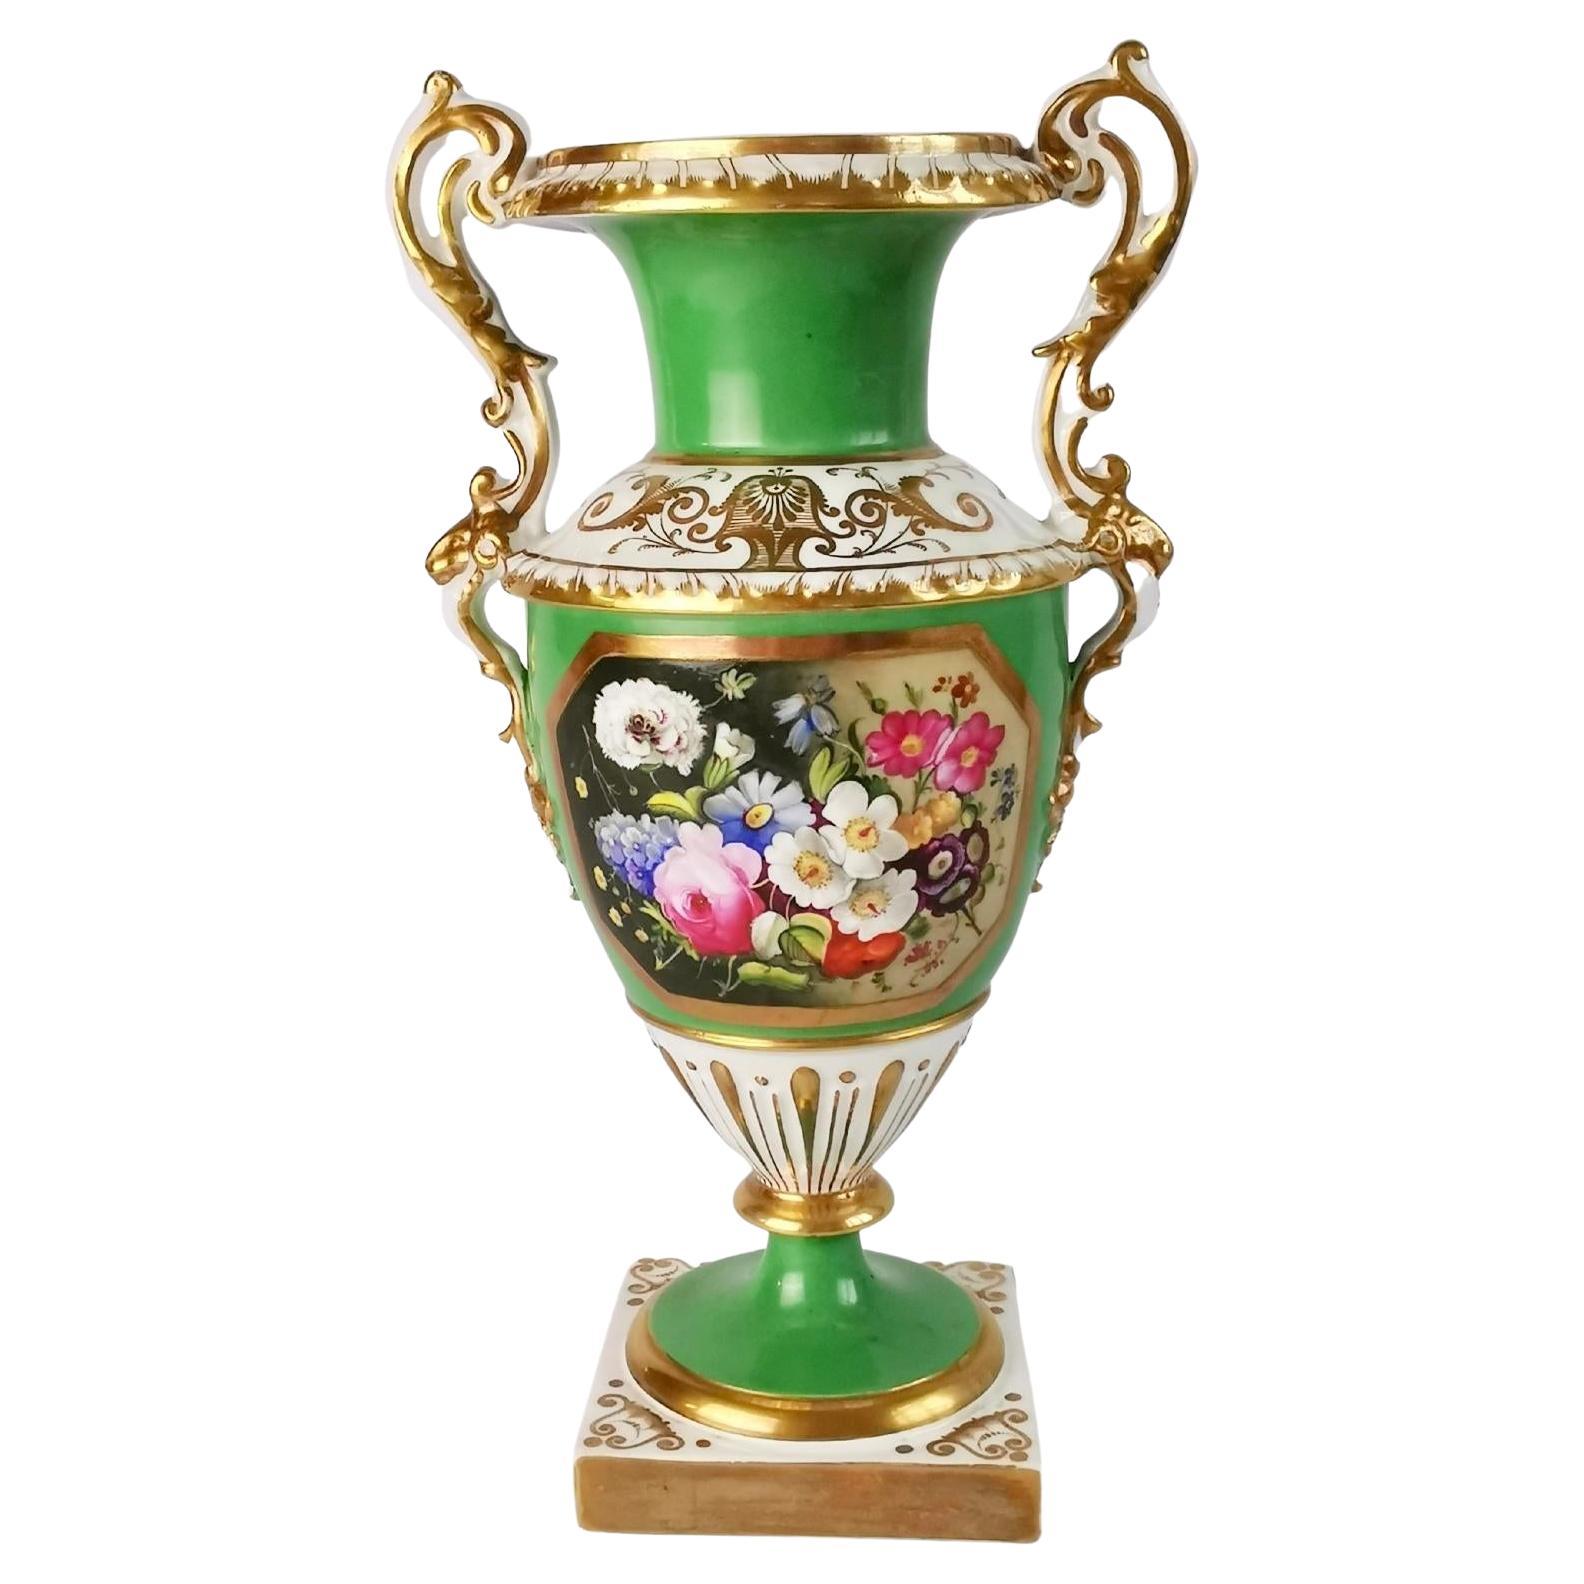 Minton Porcelain Vase, Elgin Shape, Green with Floral Reserve, 1830-1835